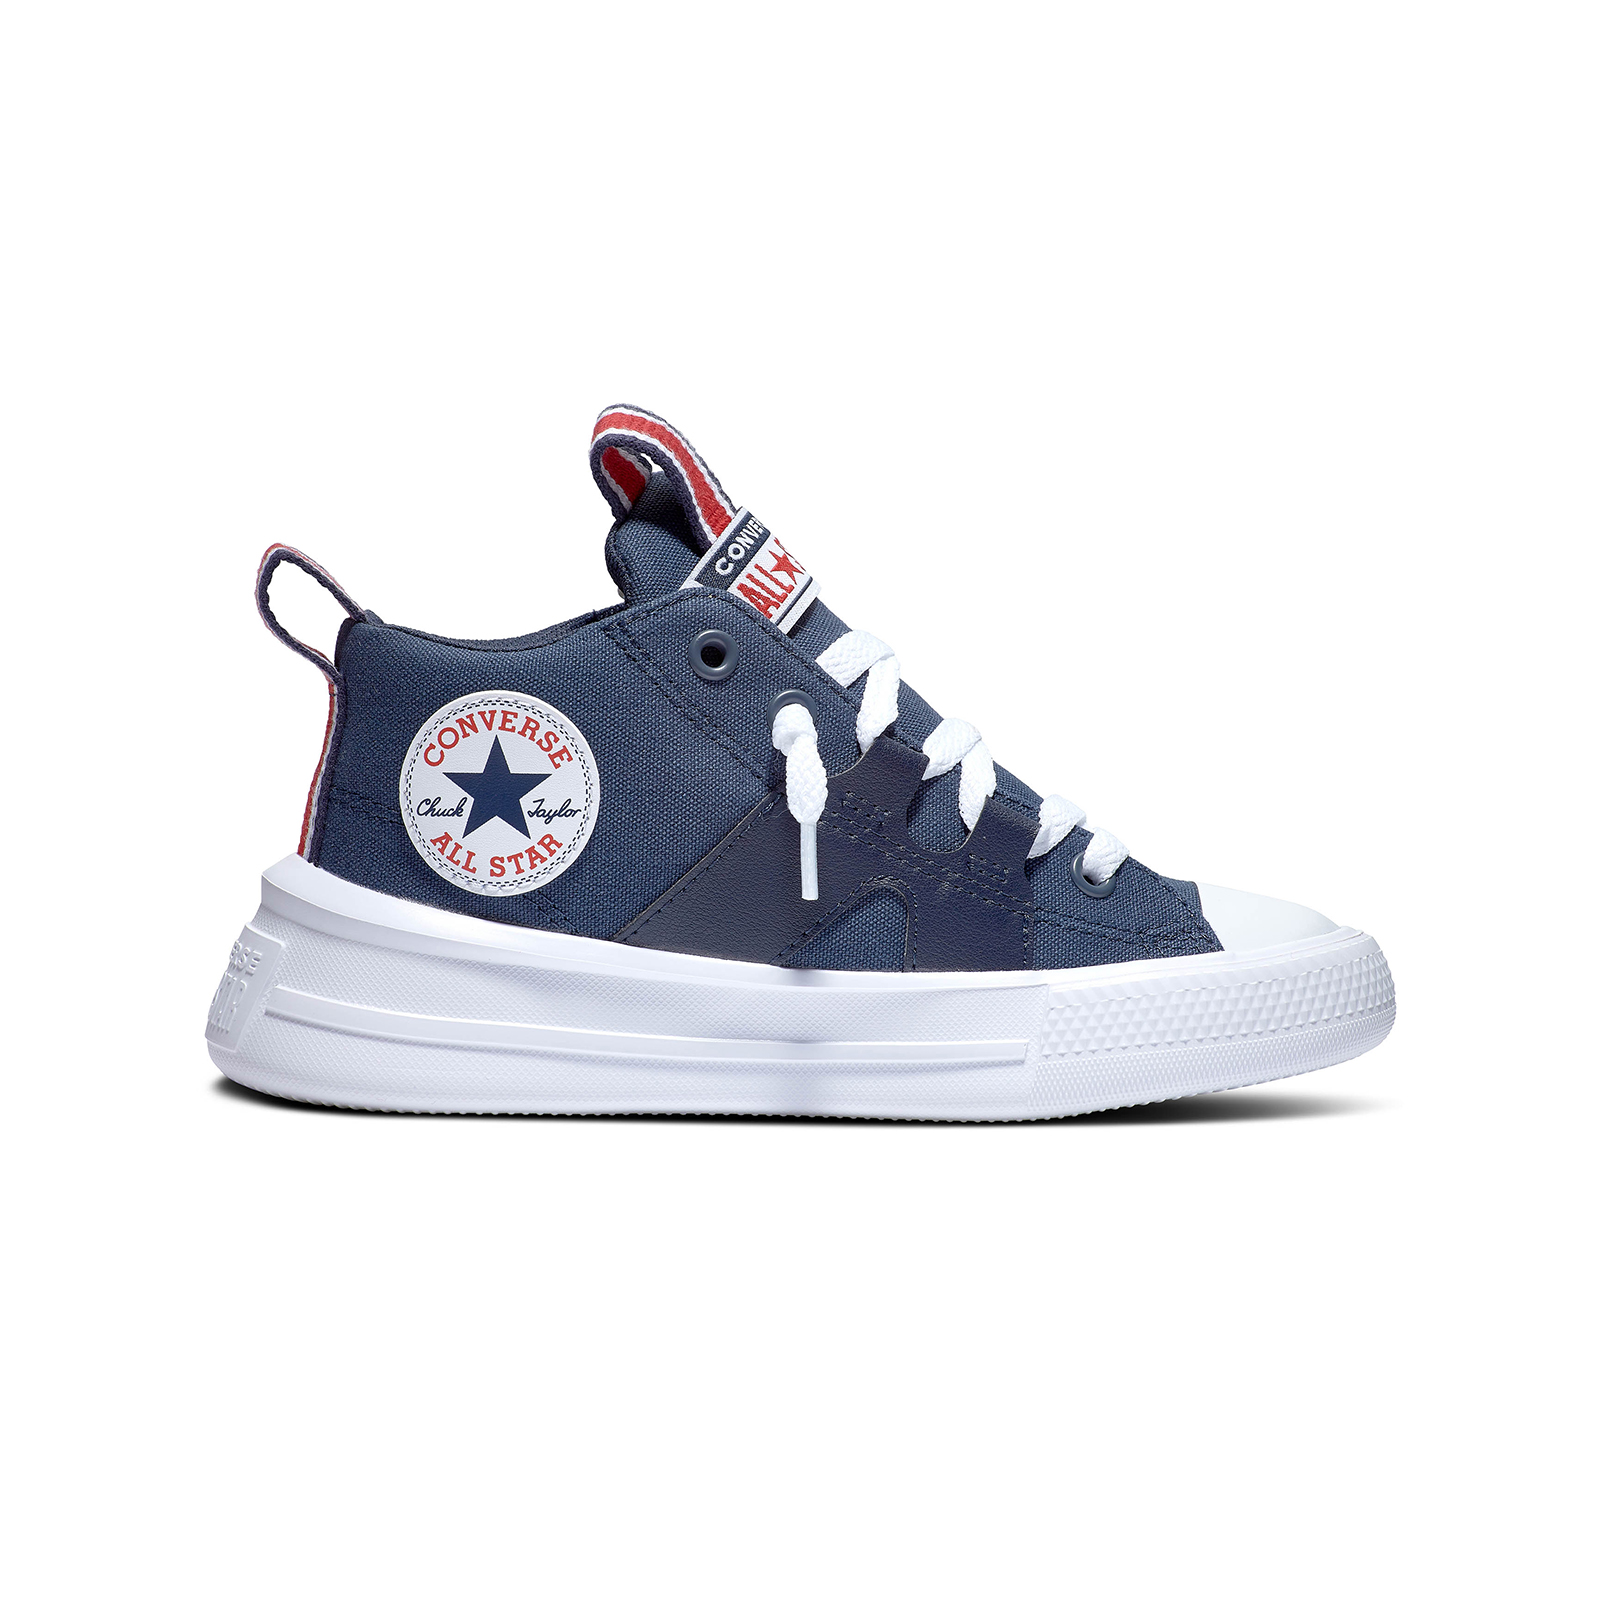 Παιδικά > Παπούτσια > Sneaker > Παπούτσι Mid Cut Converse - CHUCK TAYLOR ALL STAR ULTRA - 410-NAVY/WHITE/RED